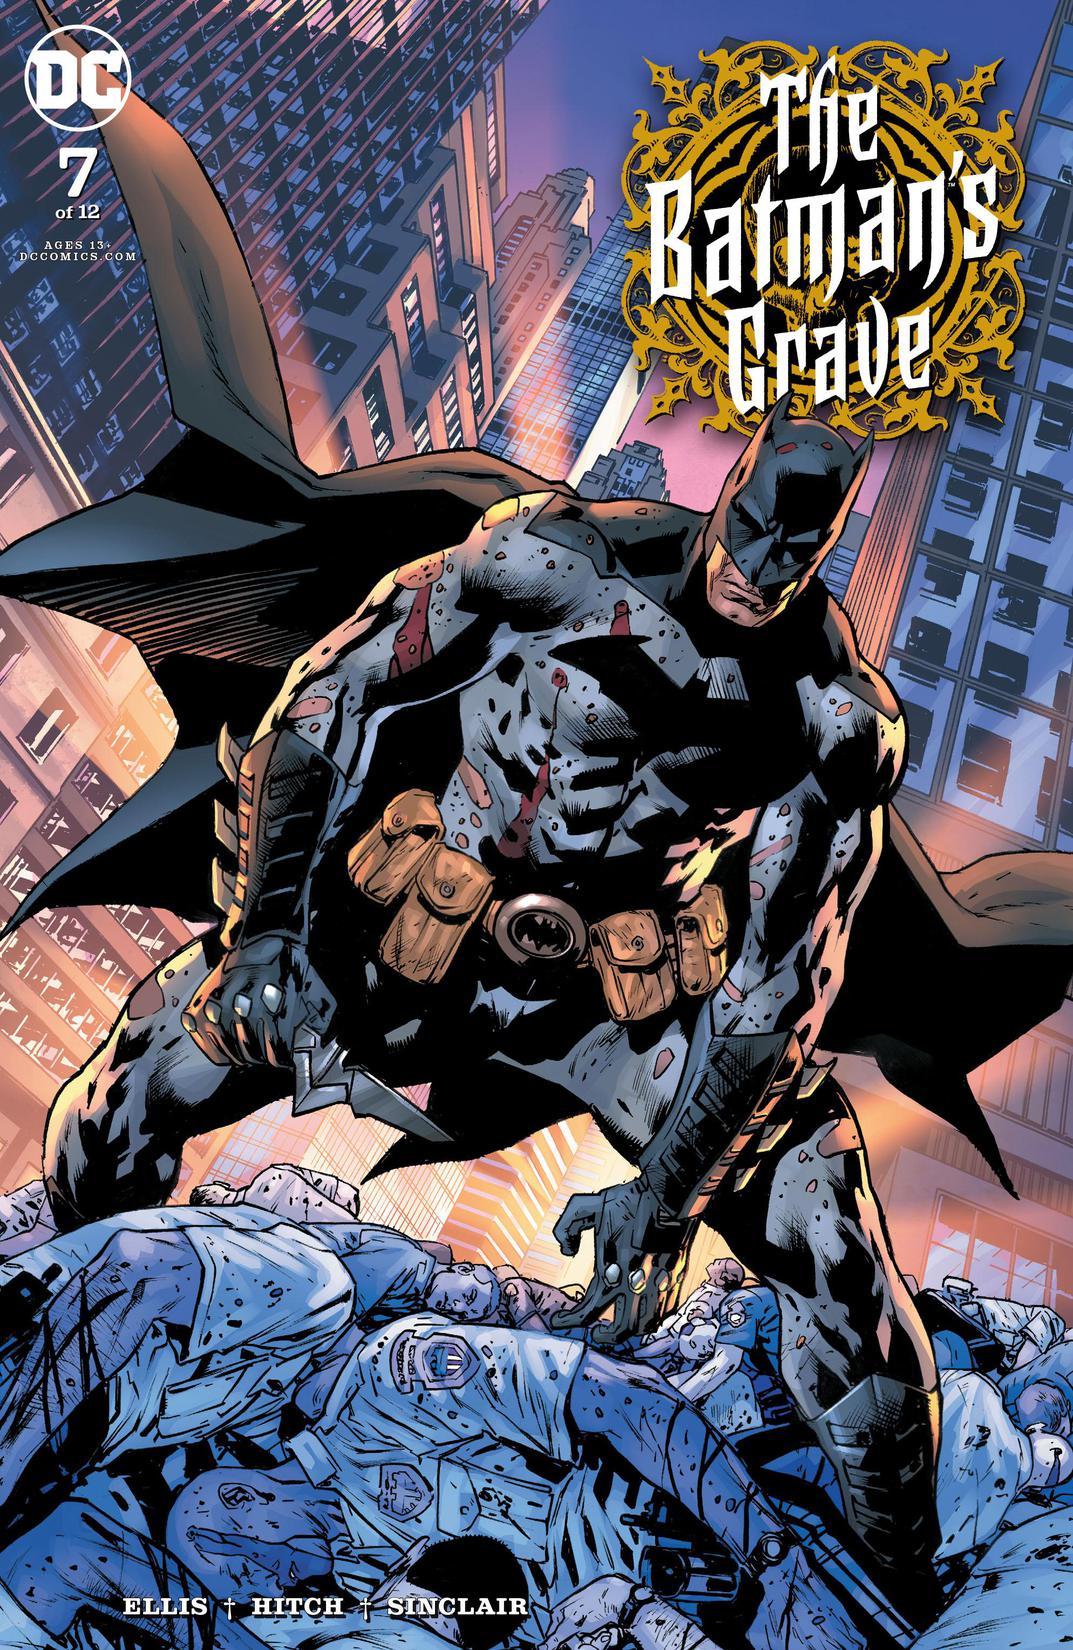 The Batman's Grave #7 preview images